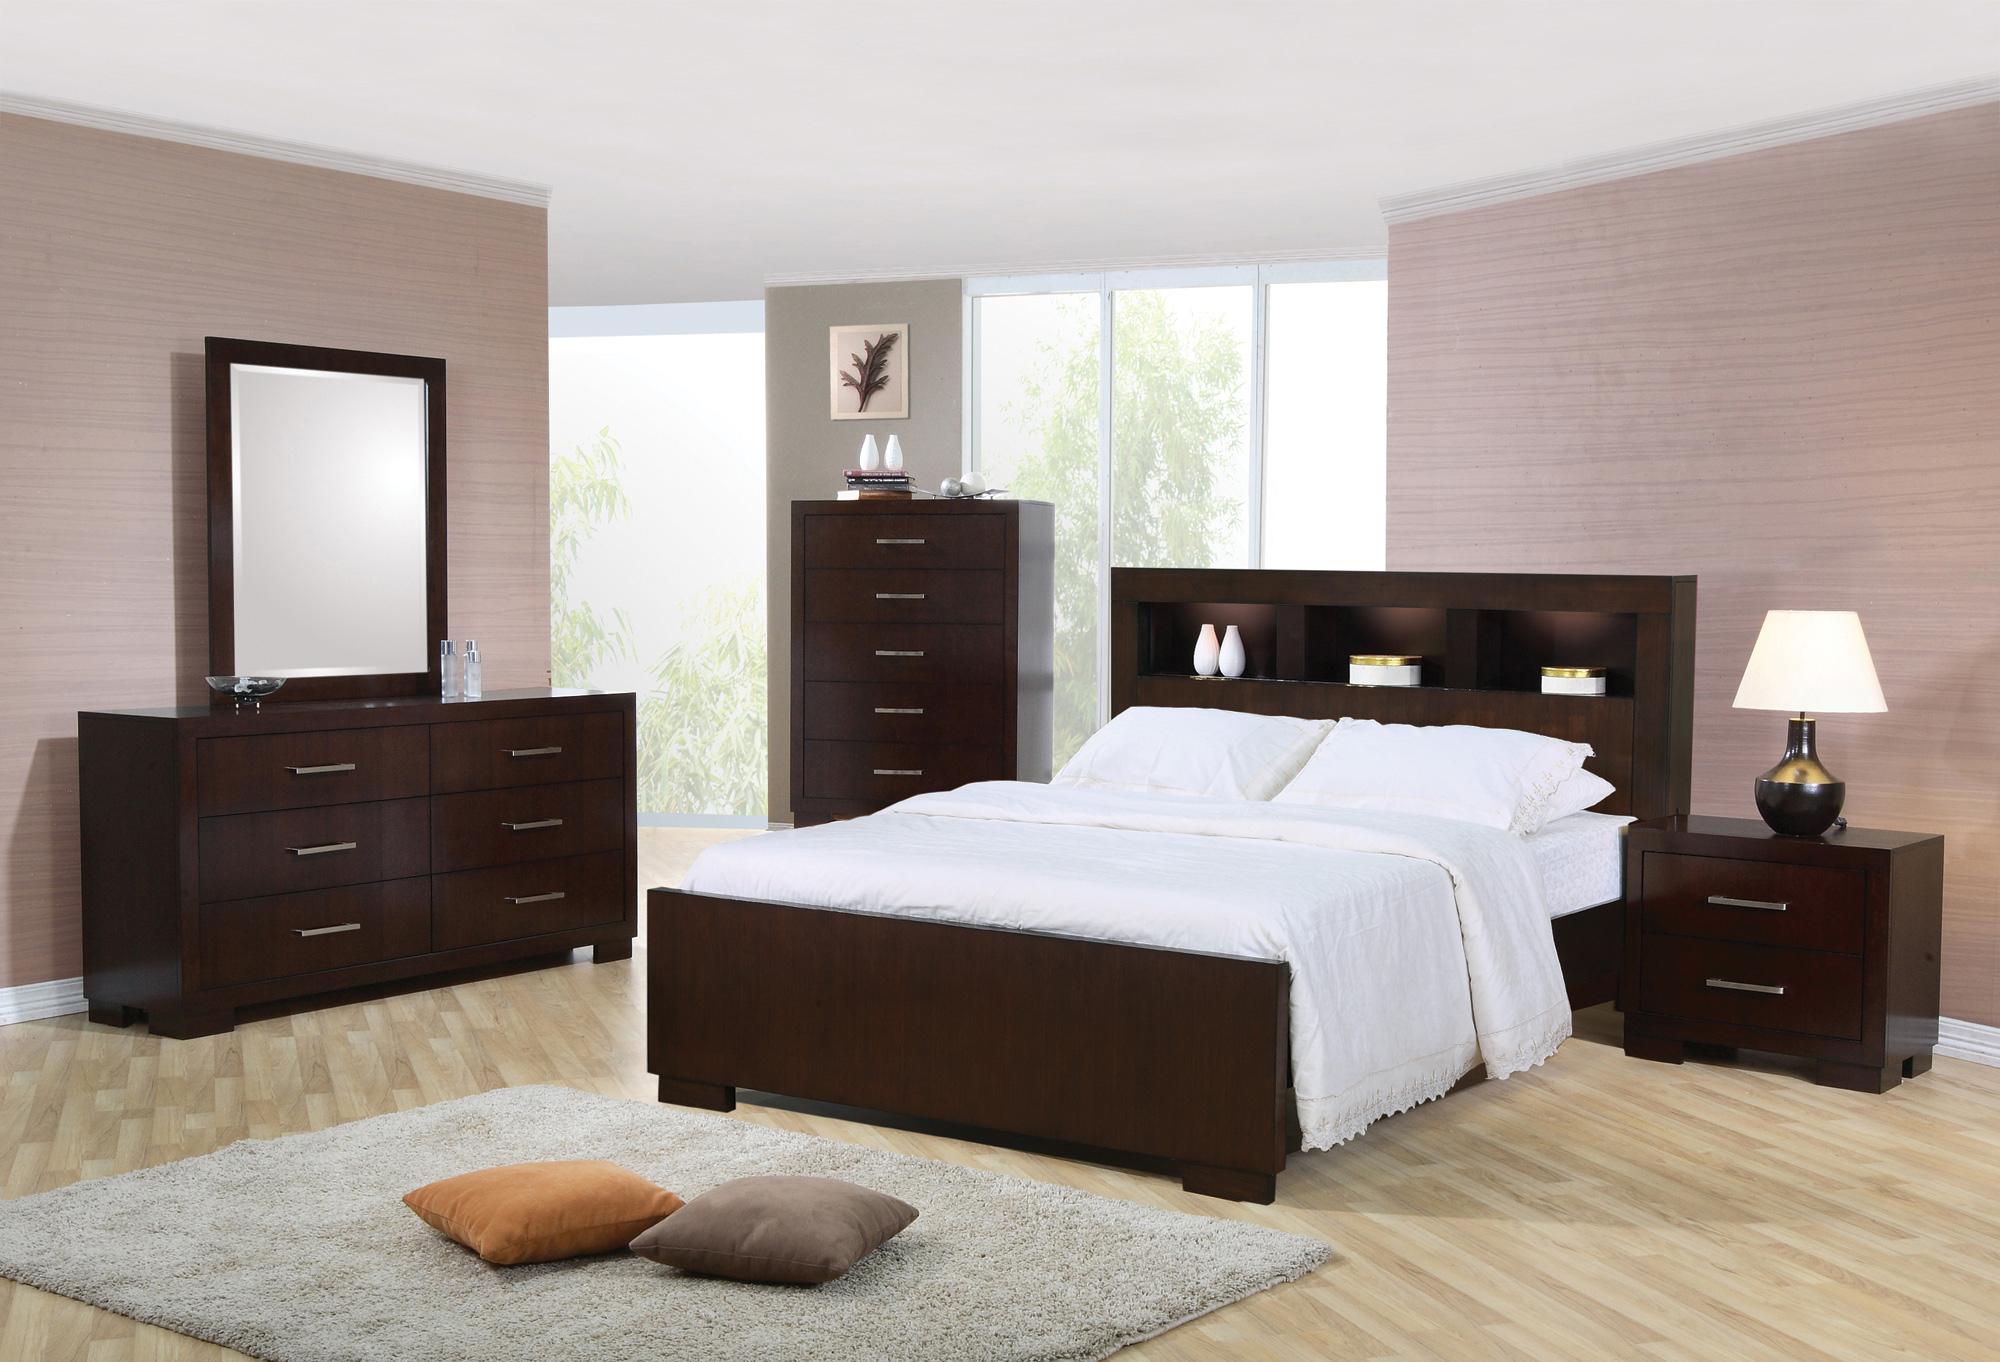 jordans bedroom furniture set